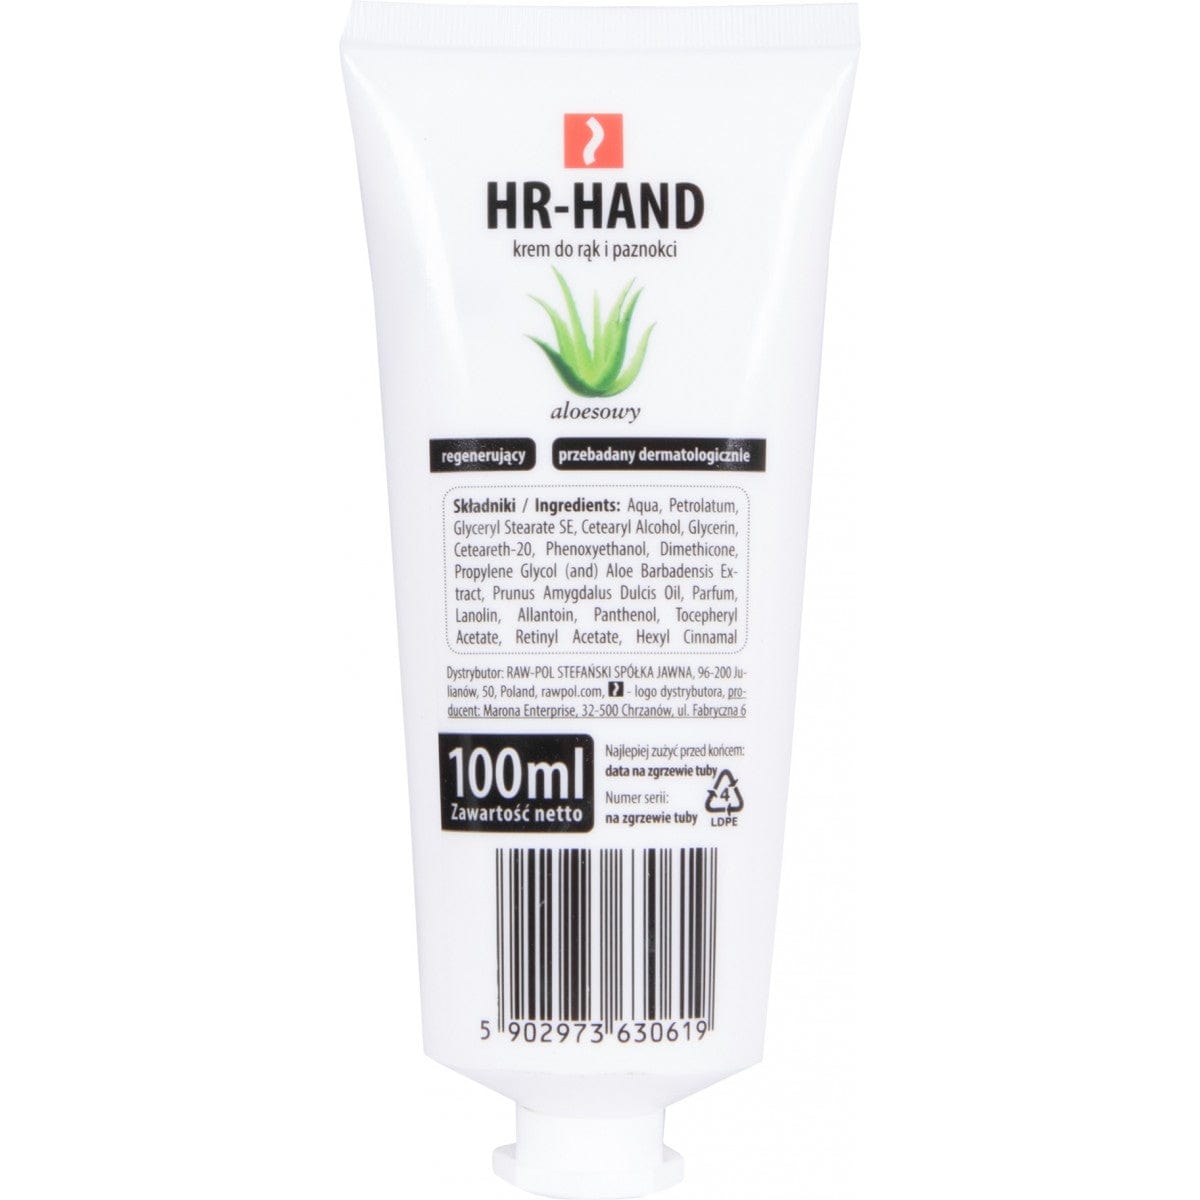 REIS Krem do rąk i paznokci HR-HAND glicerynowo - aloesowy 100 ml